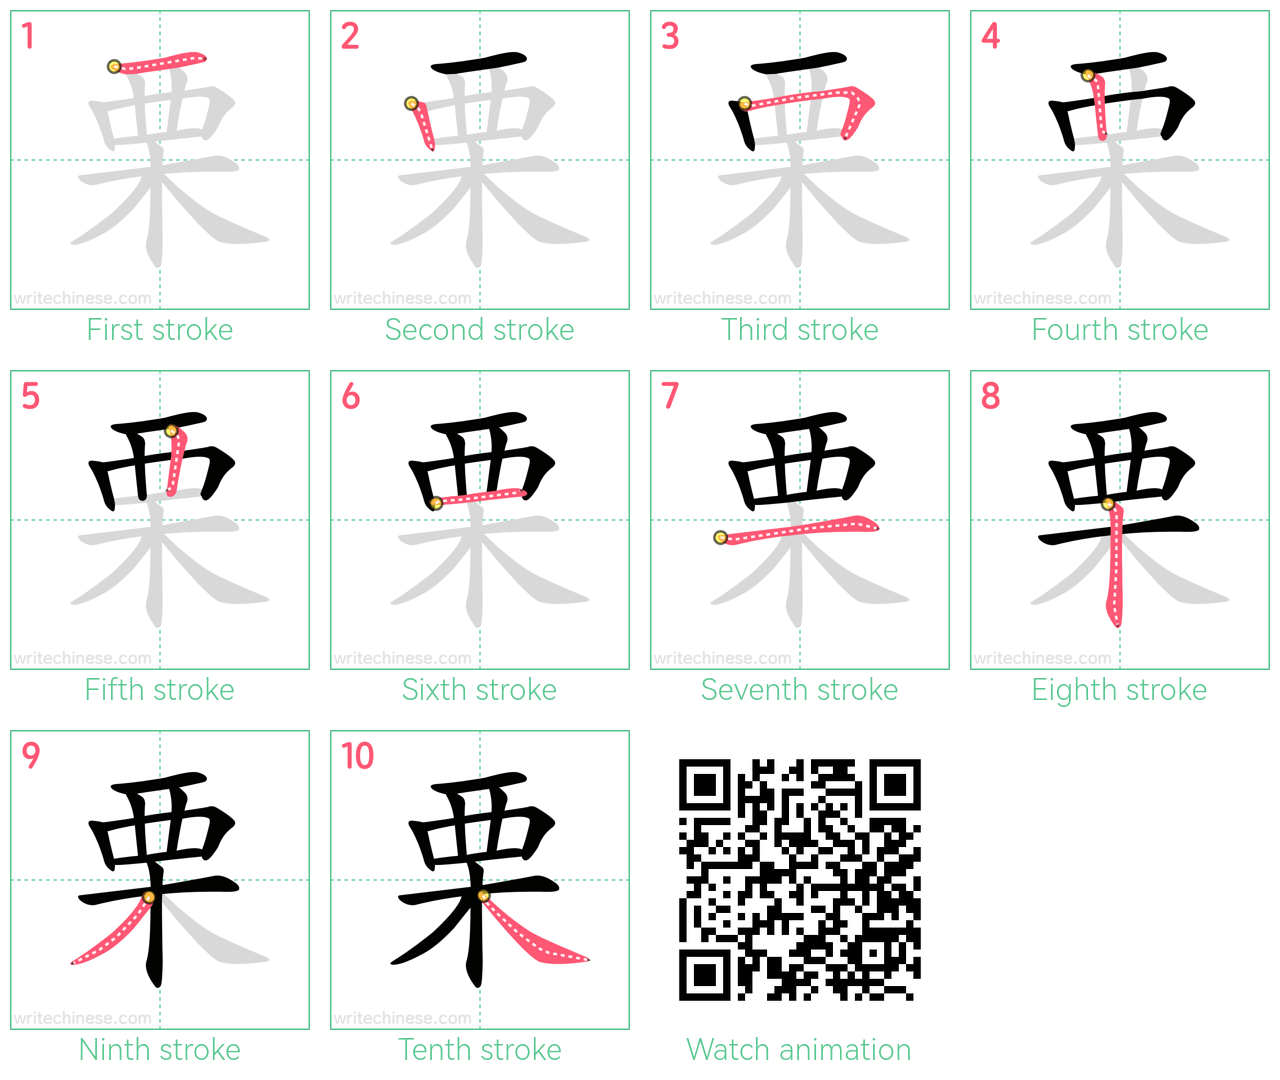 栗 step-by-step stroke order diagrams